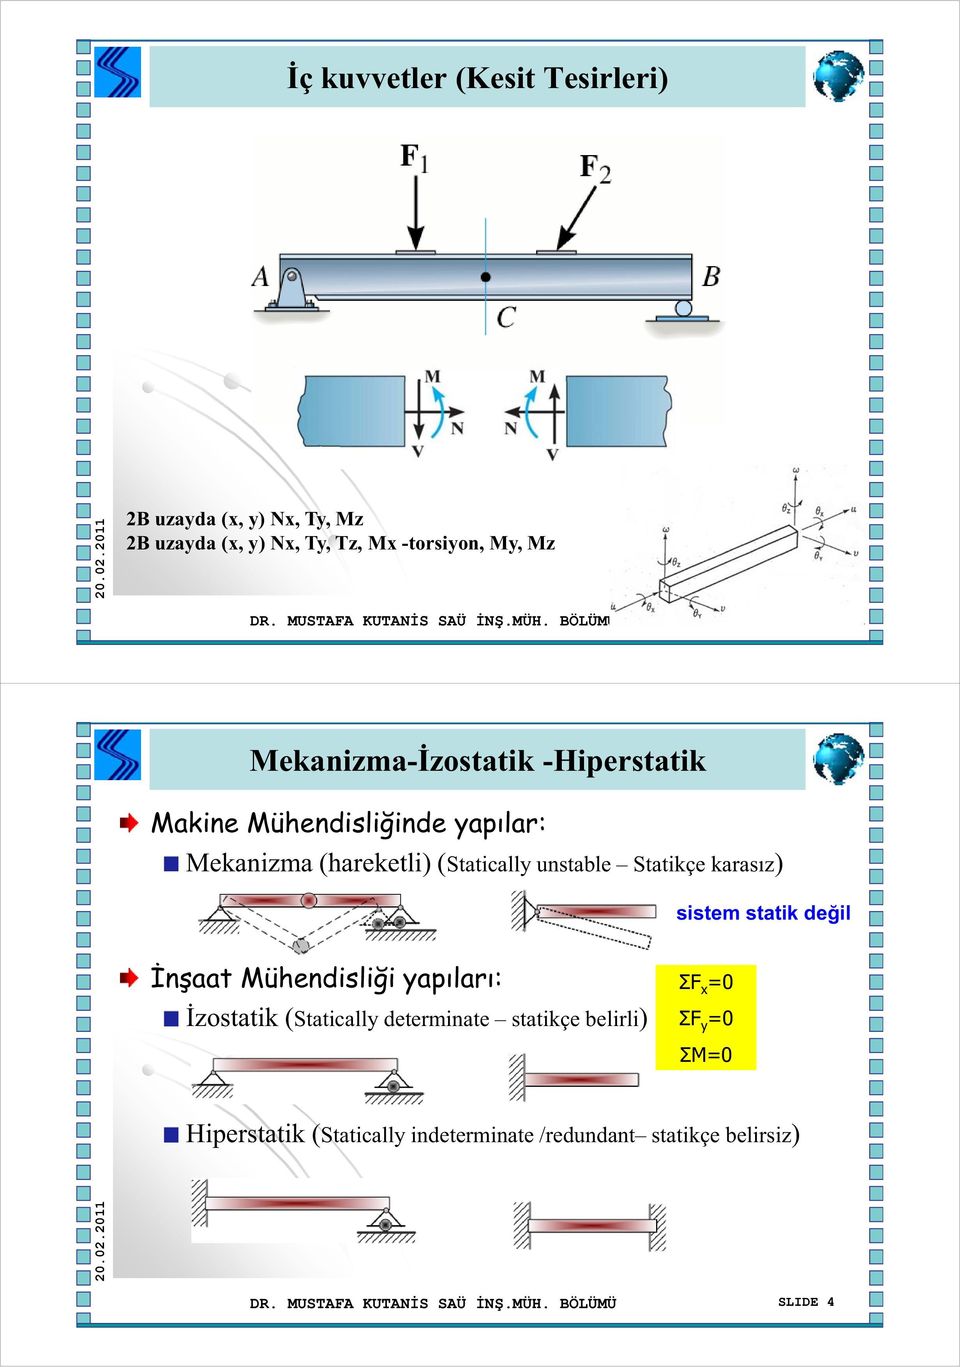 BÖLÜMÜ SLIDE 3 Mekanizma-İzostatik -Hiperstatik Makine Mühendisliğinde yapılar: Mekanizma (hareketli) (Statically unstable